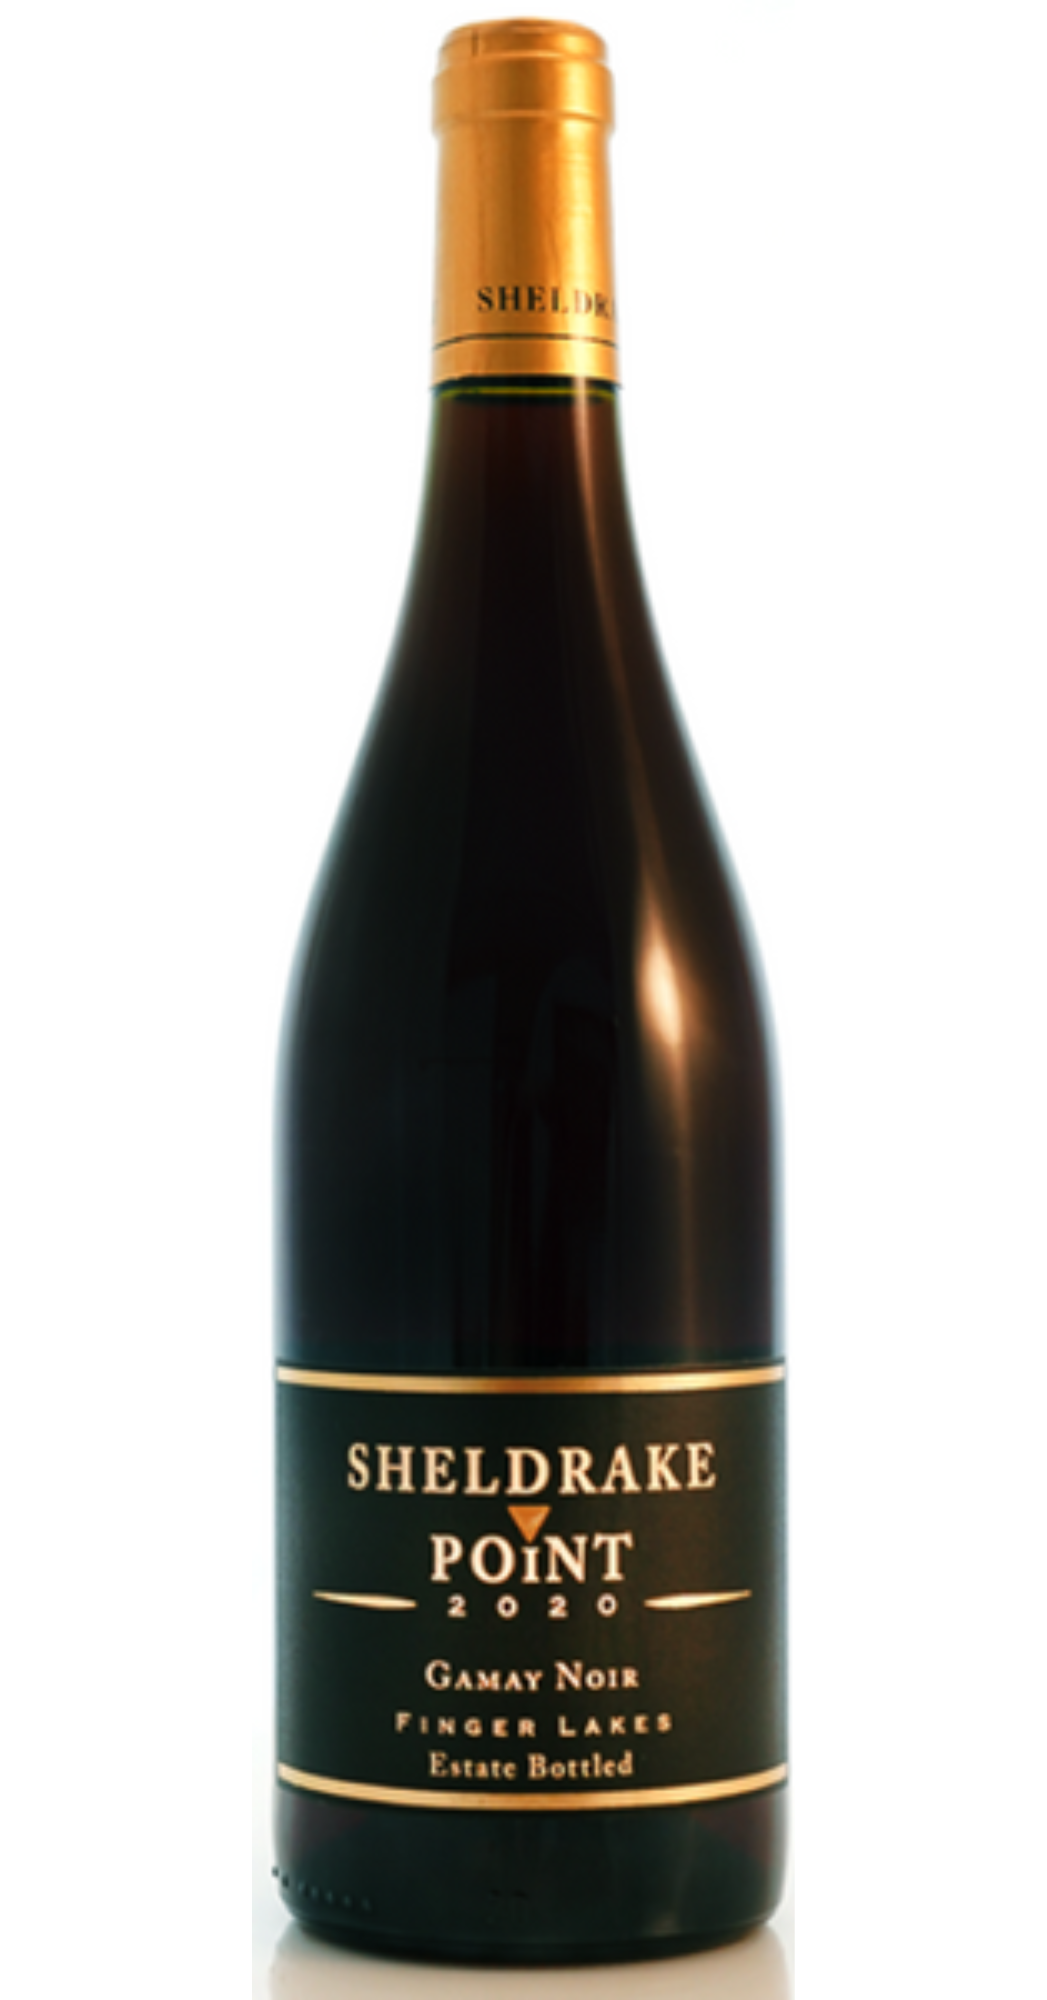 2015 Sheldrake Pinot Noir Gamay